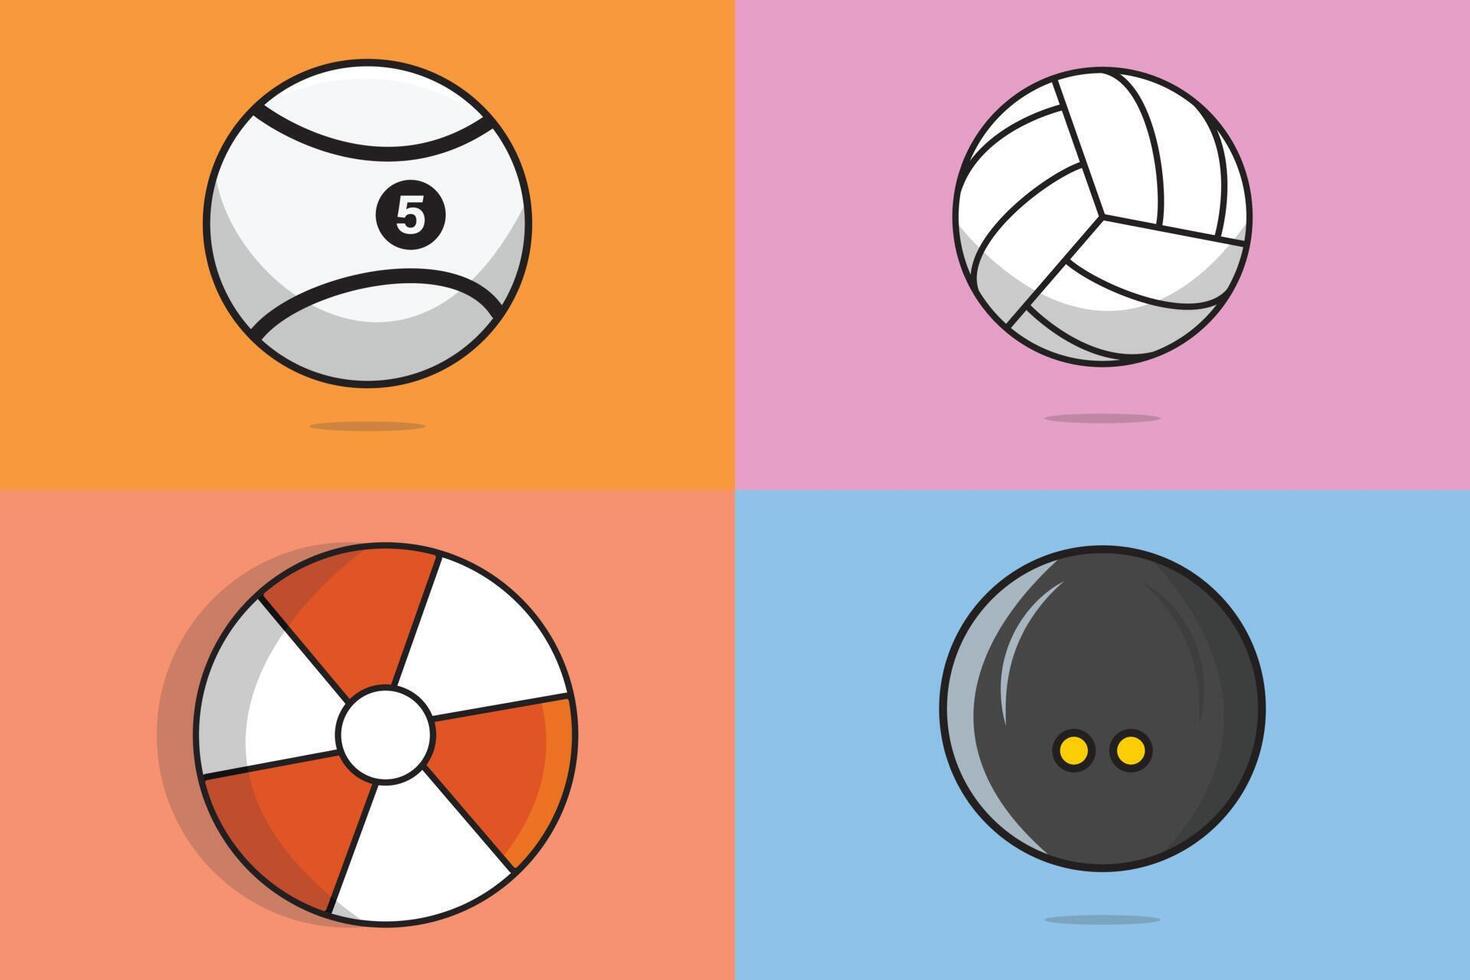 conjunto de ilustración de vector de elemento de equipo de juegos de deportes. concepto de icono de objetos deportivos. bola de billar, pelota de golf, bola de lanzamiento, diseño vectorial de colección de bolas de squash. amante de los deportes, ícono de símbolos deportivos.